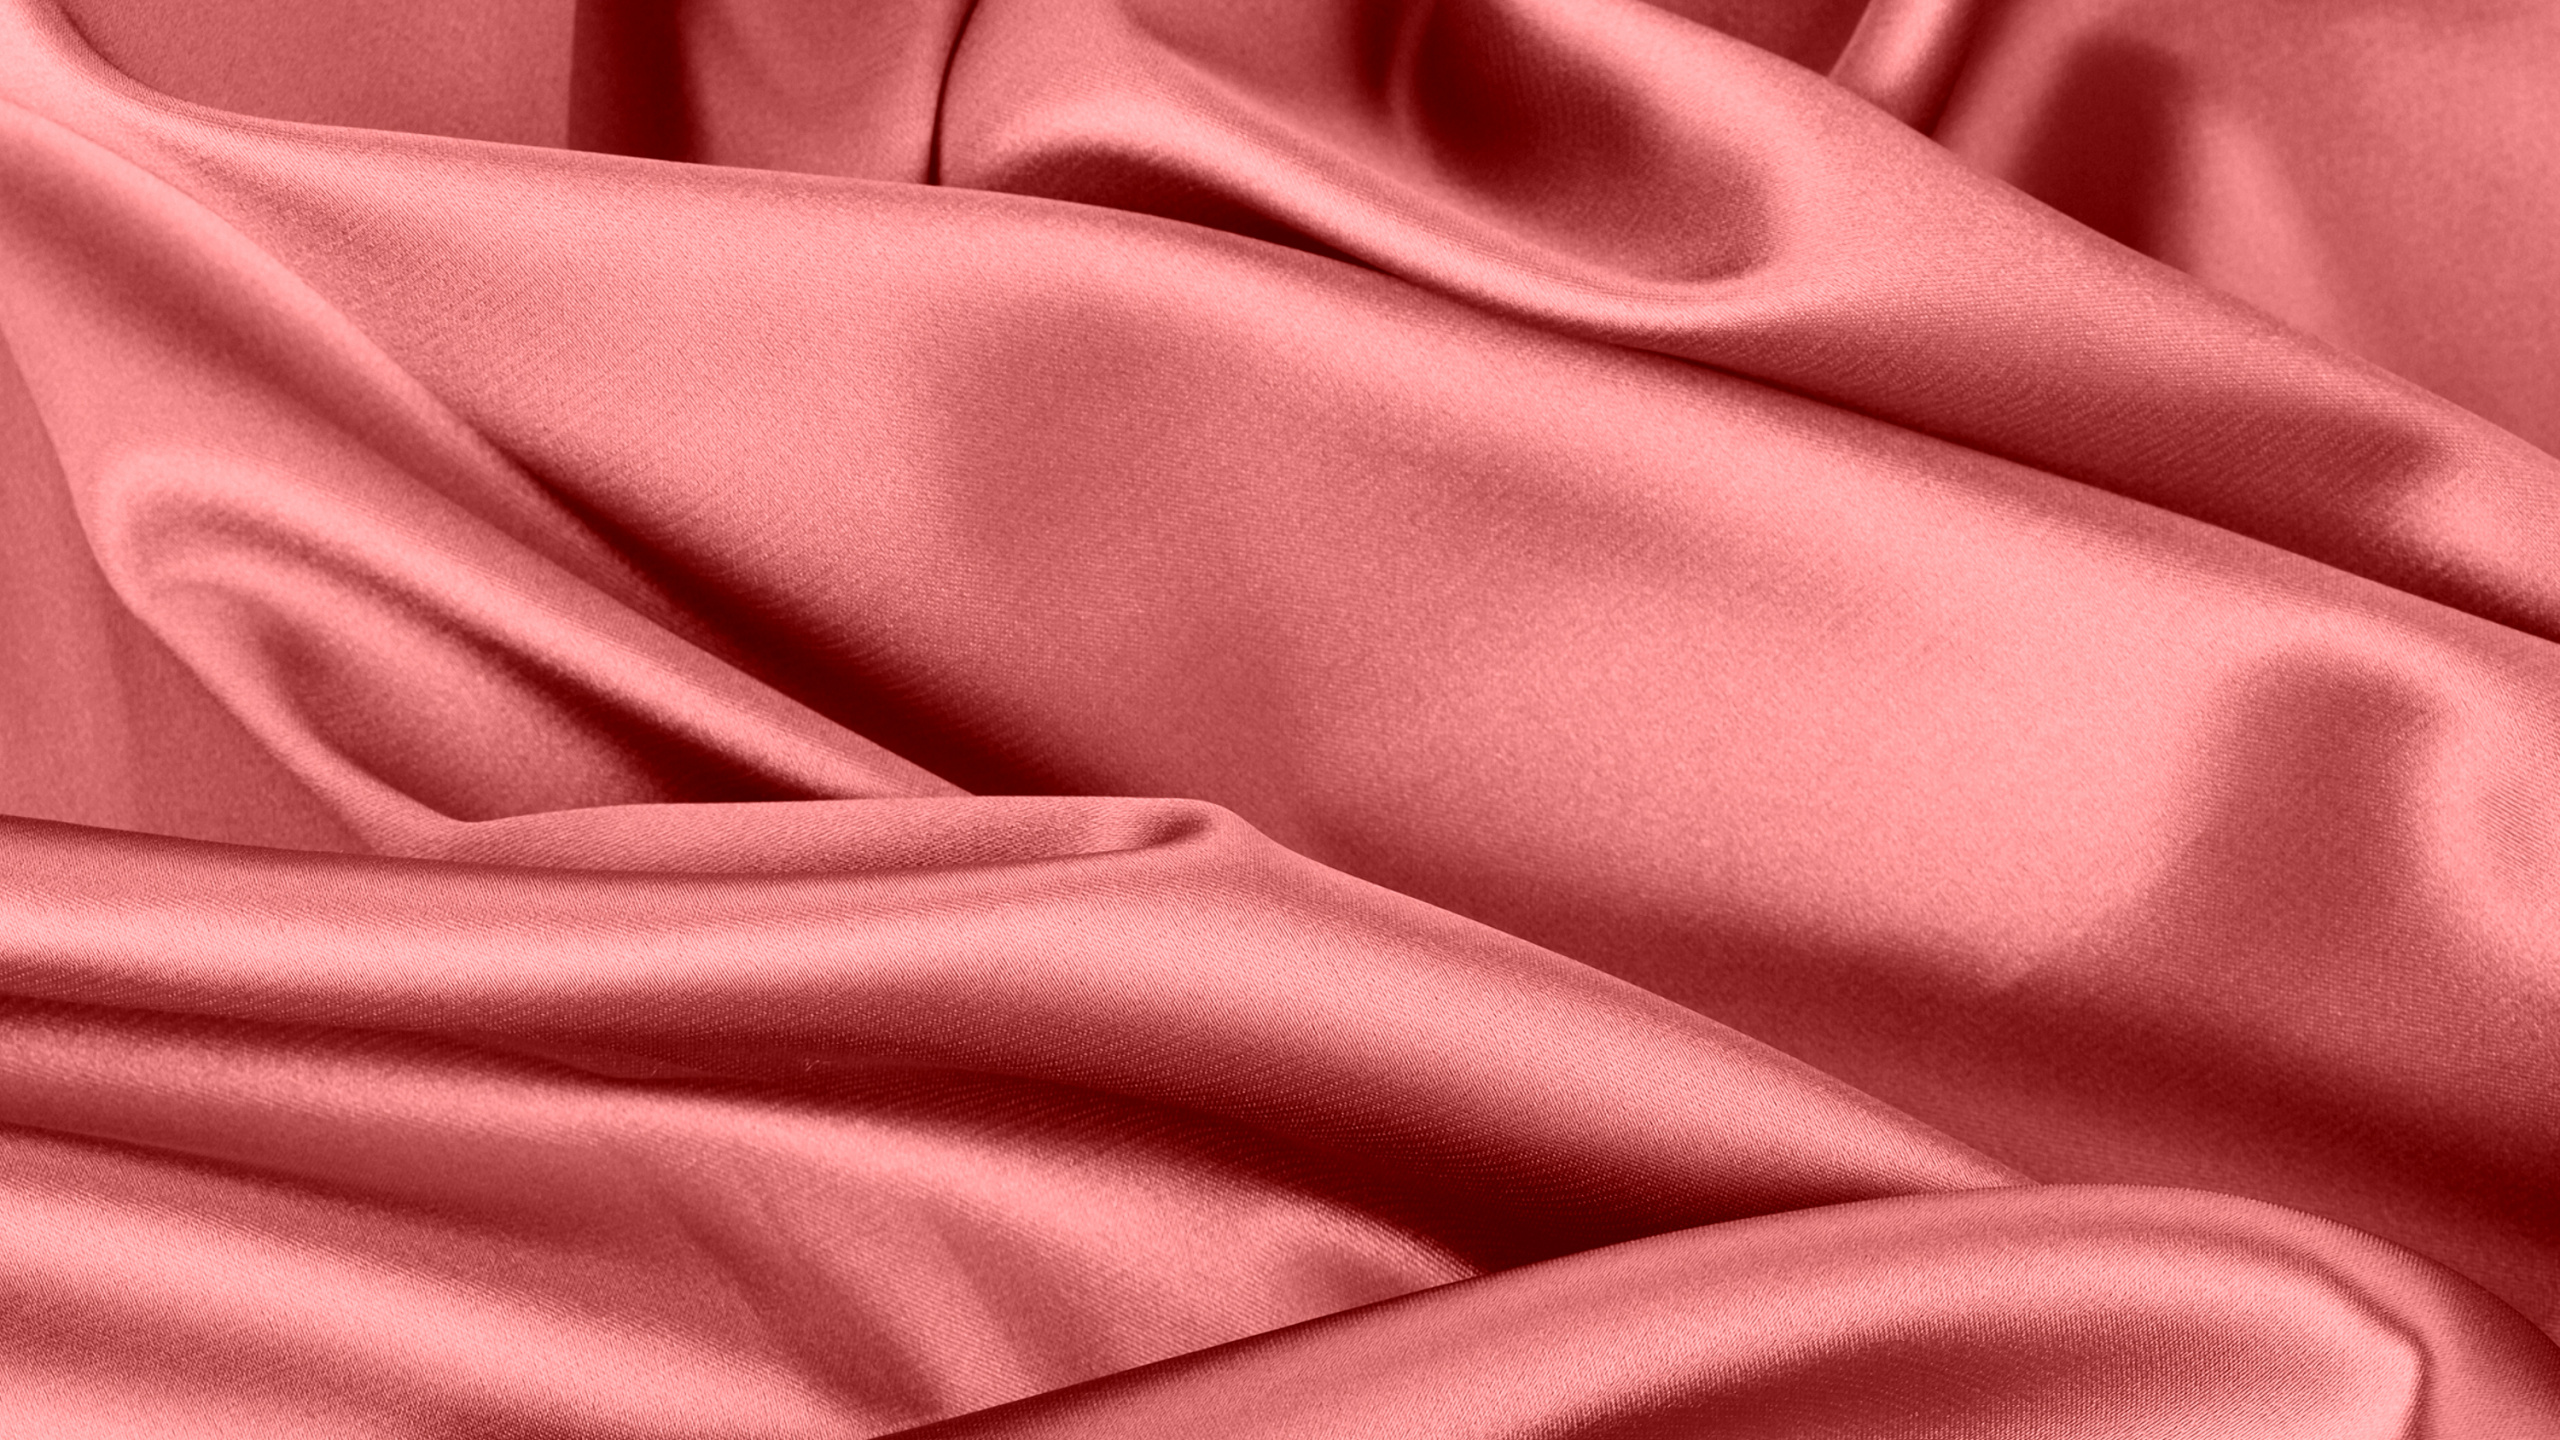 颜色, 缎面, 丝绸, 粉红色, 红色的 壁纸 2560x1440 允许